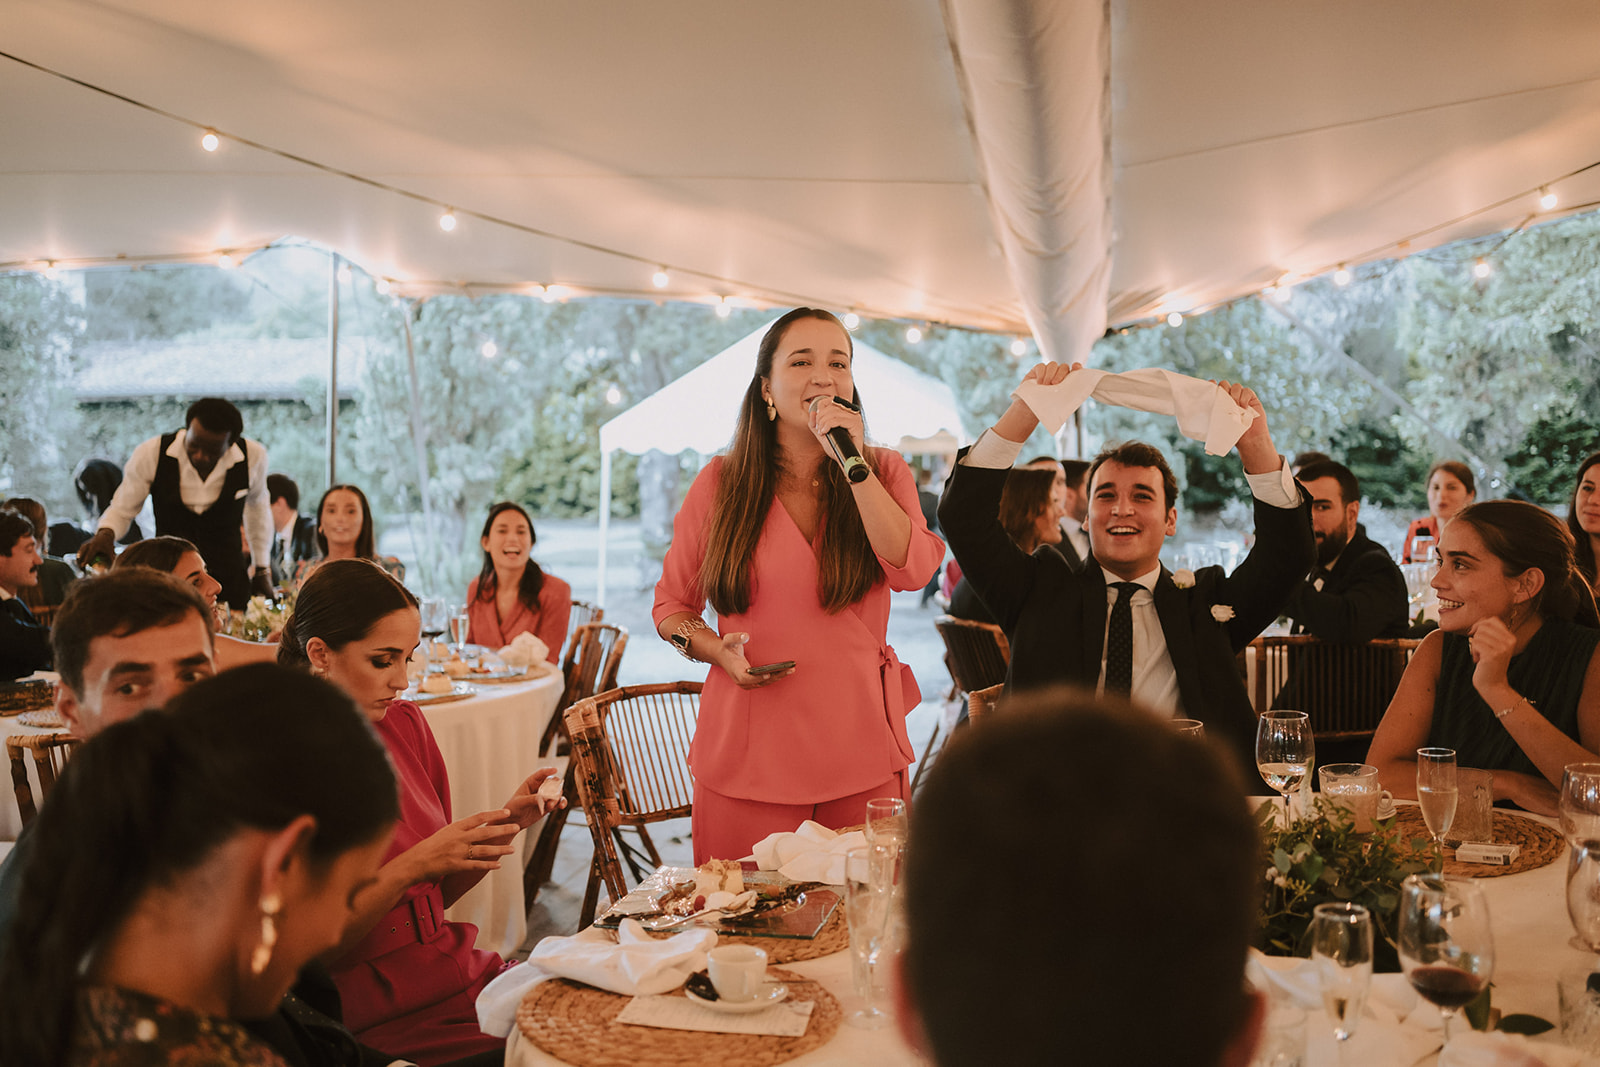 Amiga de la novia dando un discurso durante el banquete